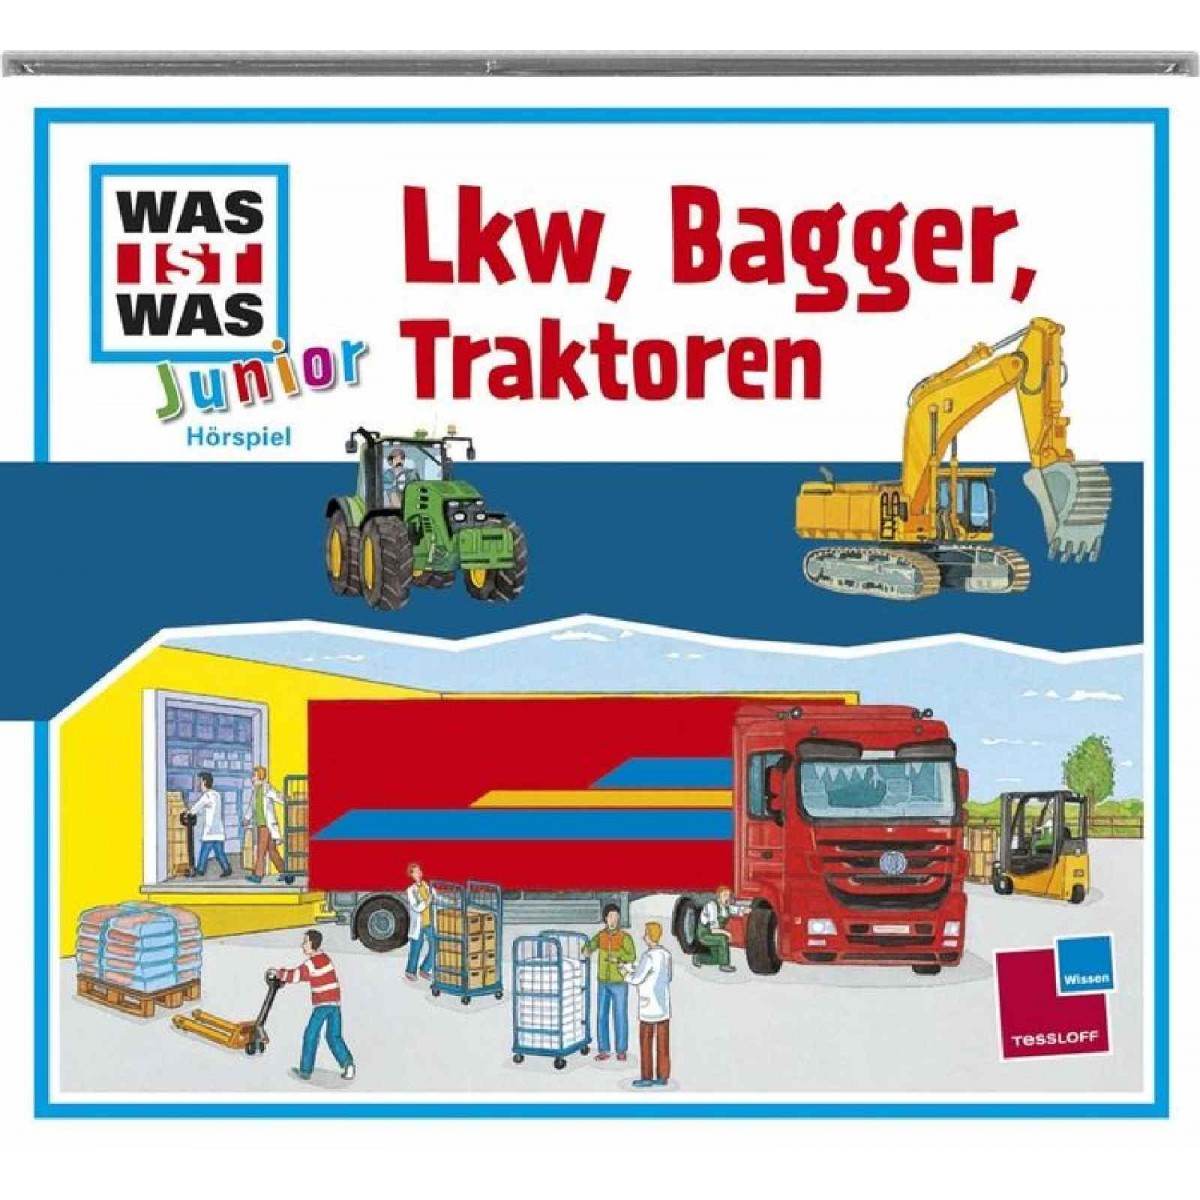 Tessloff - Was ist Was Junior CD - LKW, Bagger, Traktoren